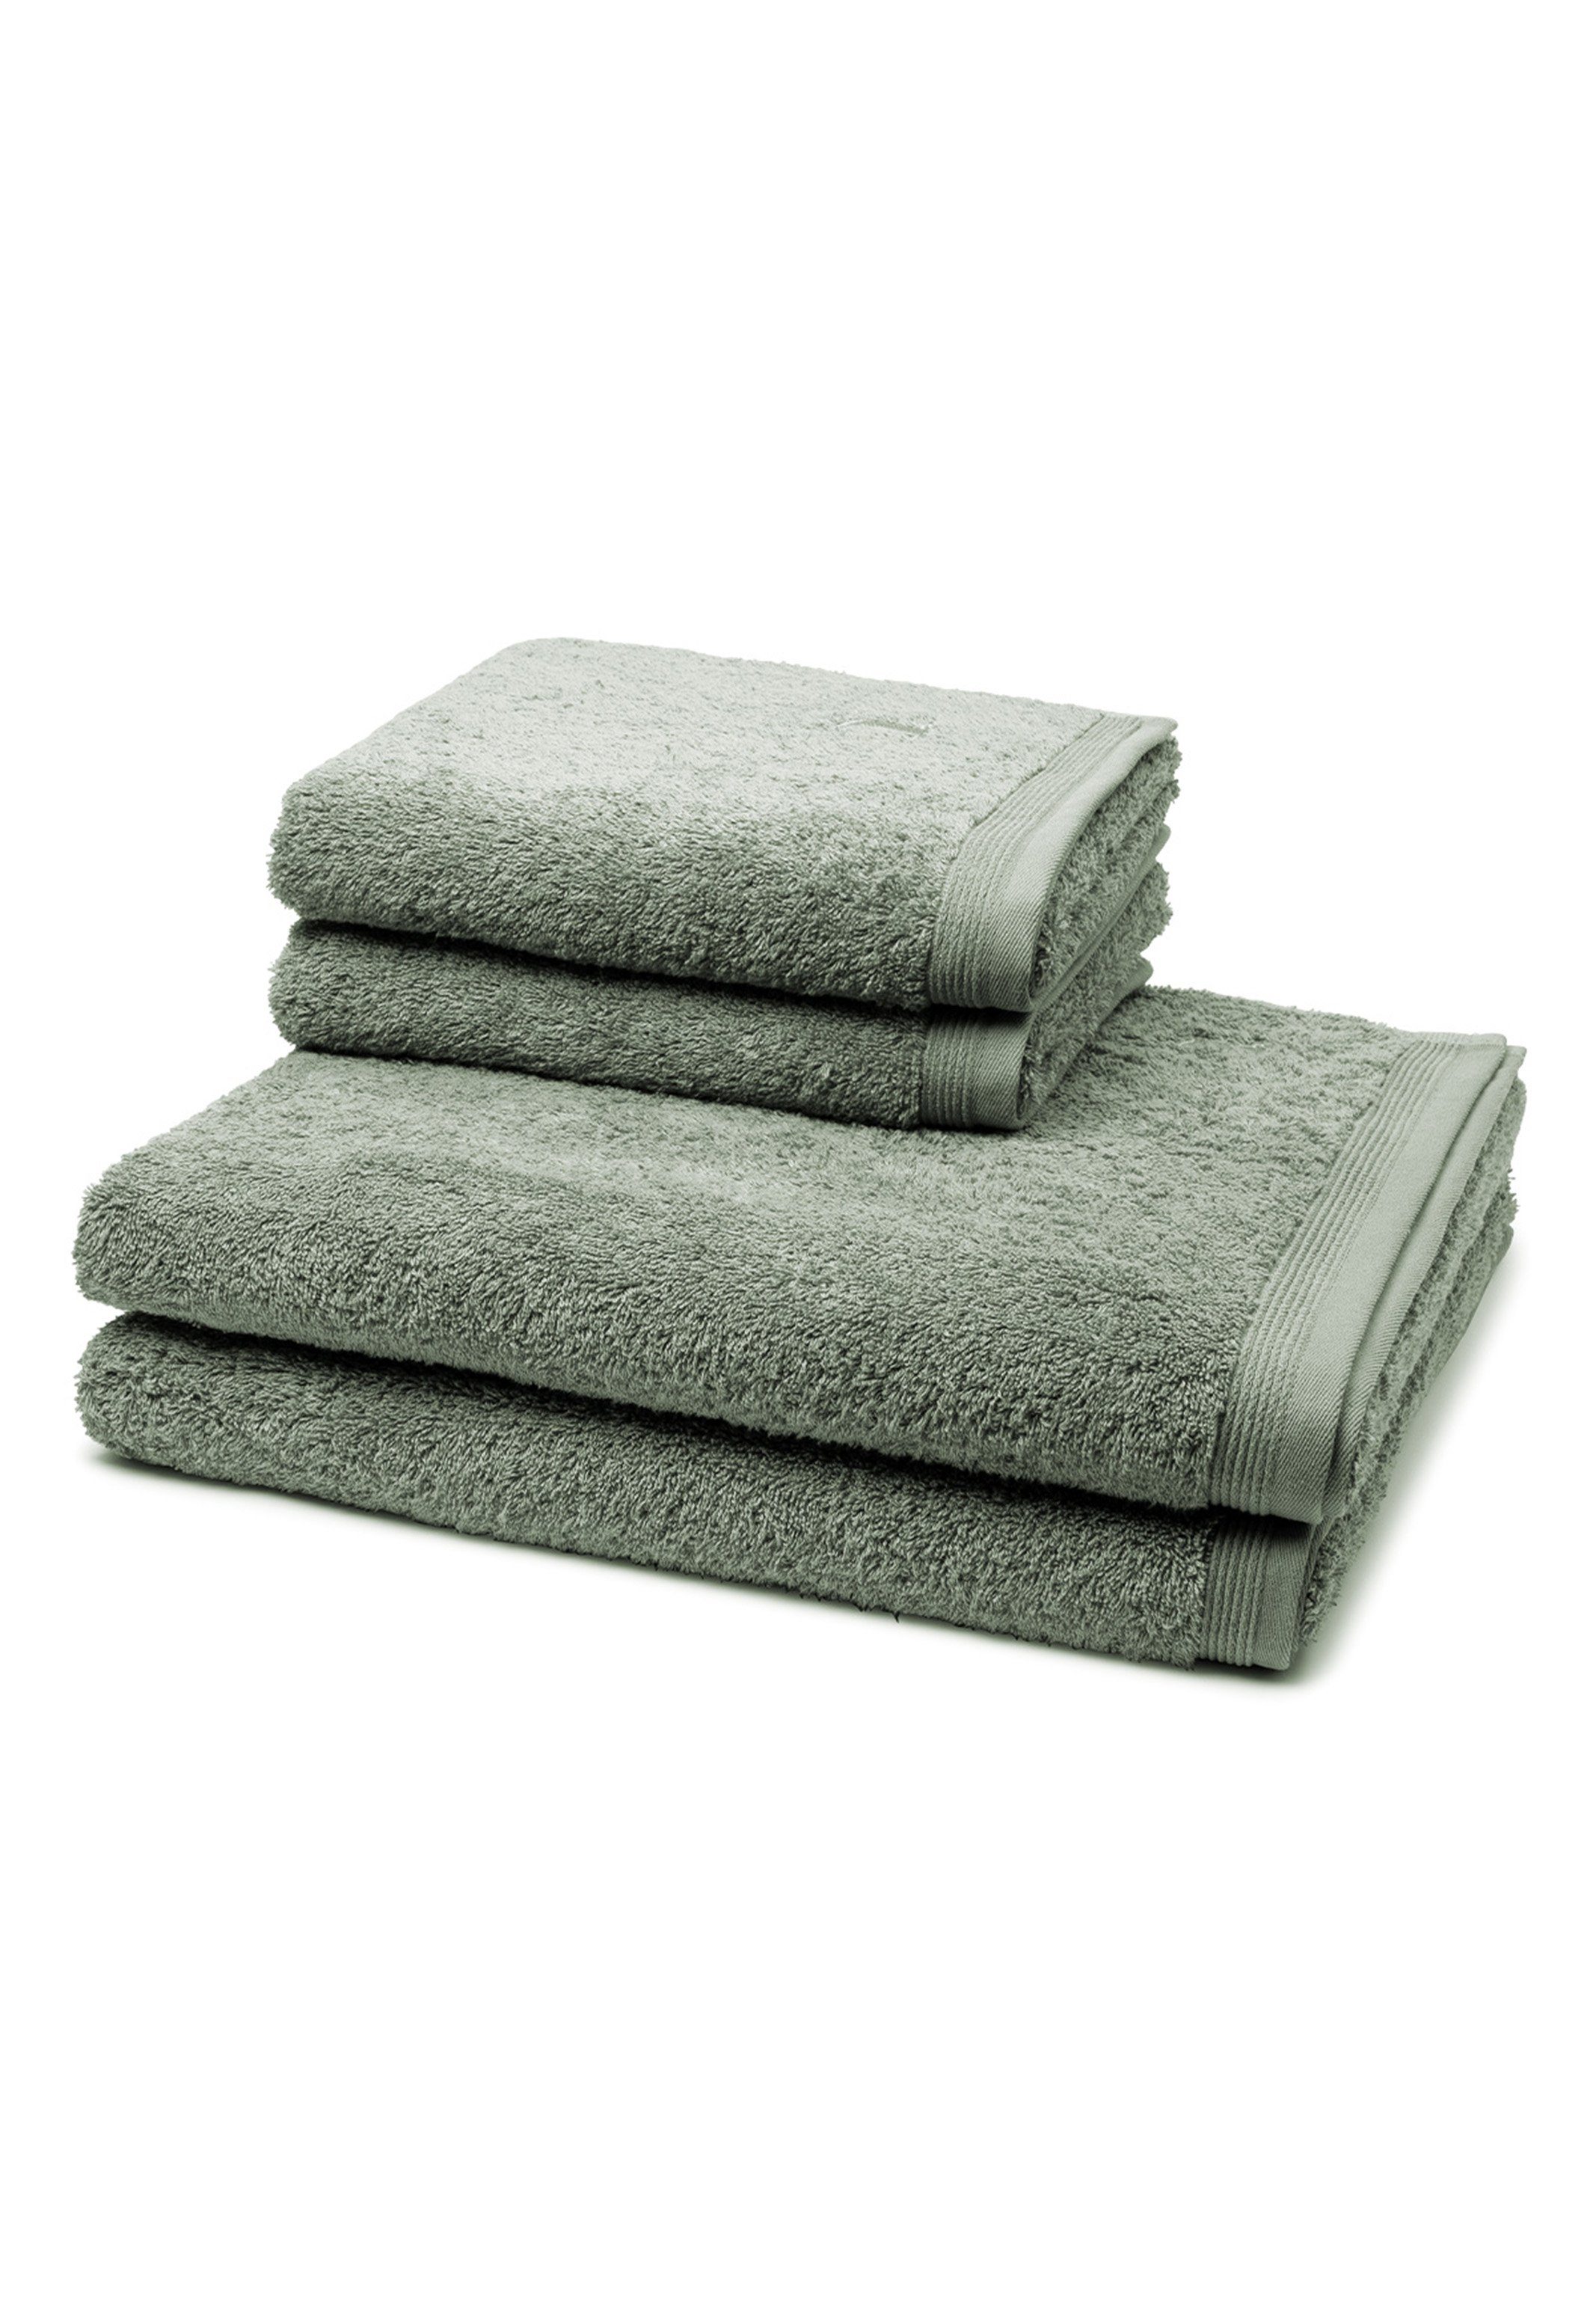 Möve Handtuch Set Superwuschel, Walkfrottee, (Spar-Set, 4-tlg), 2 X Handtuch 2 X Duschtuch im Set - Baumwolle - Extraweiches Handtuch